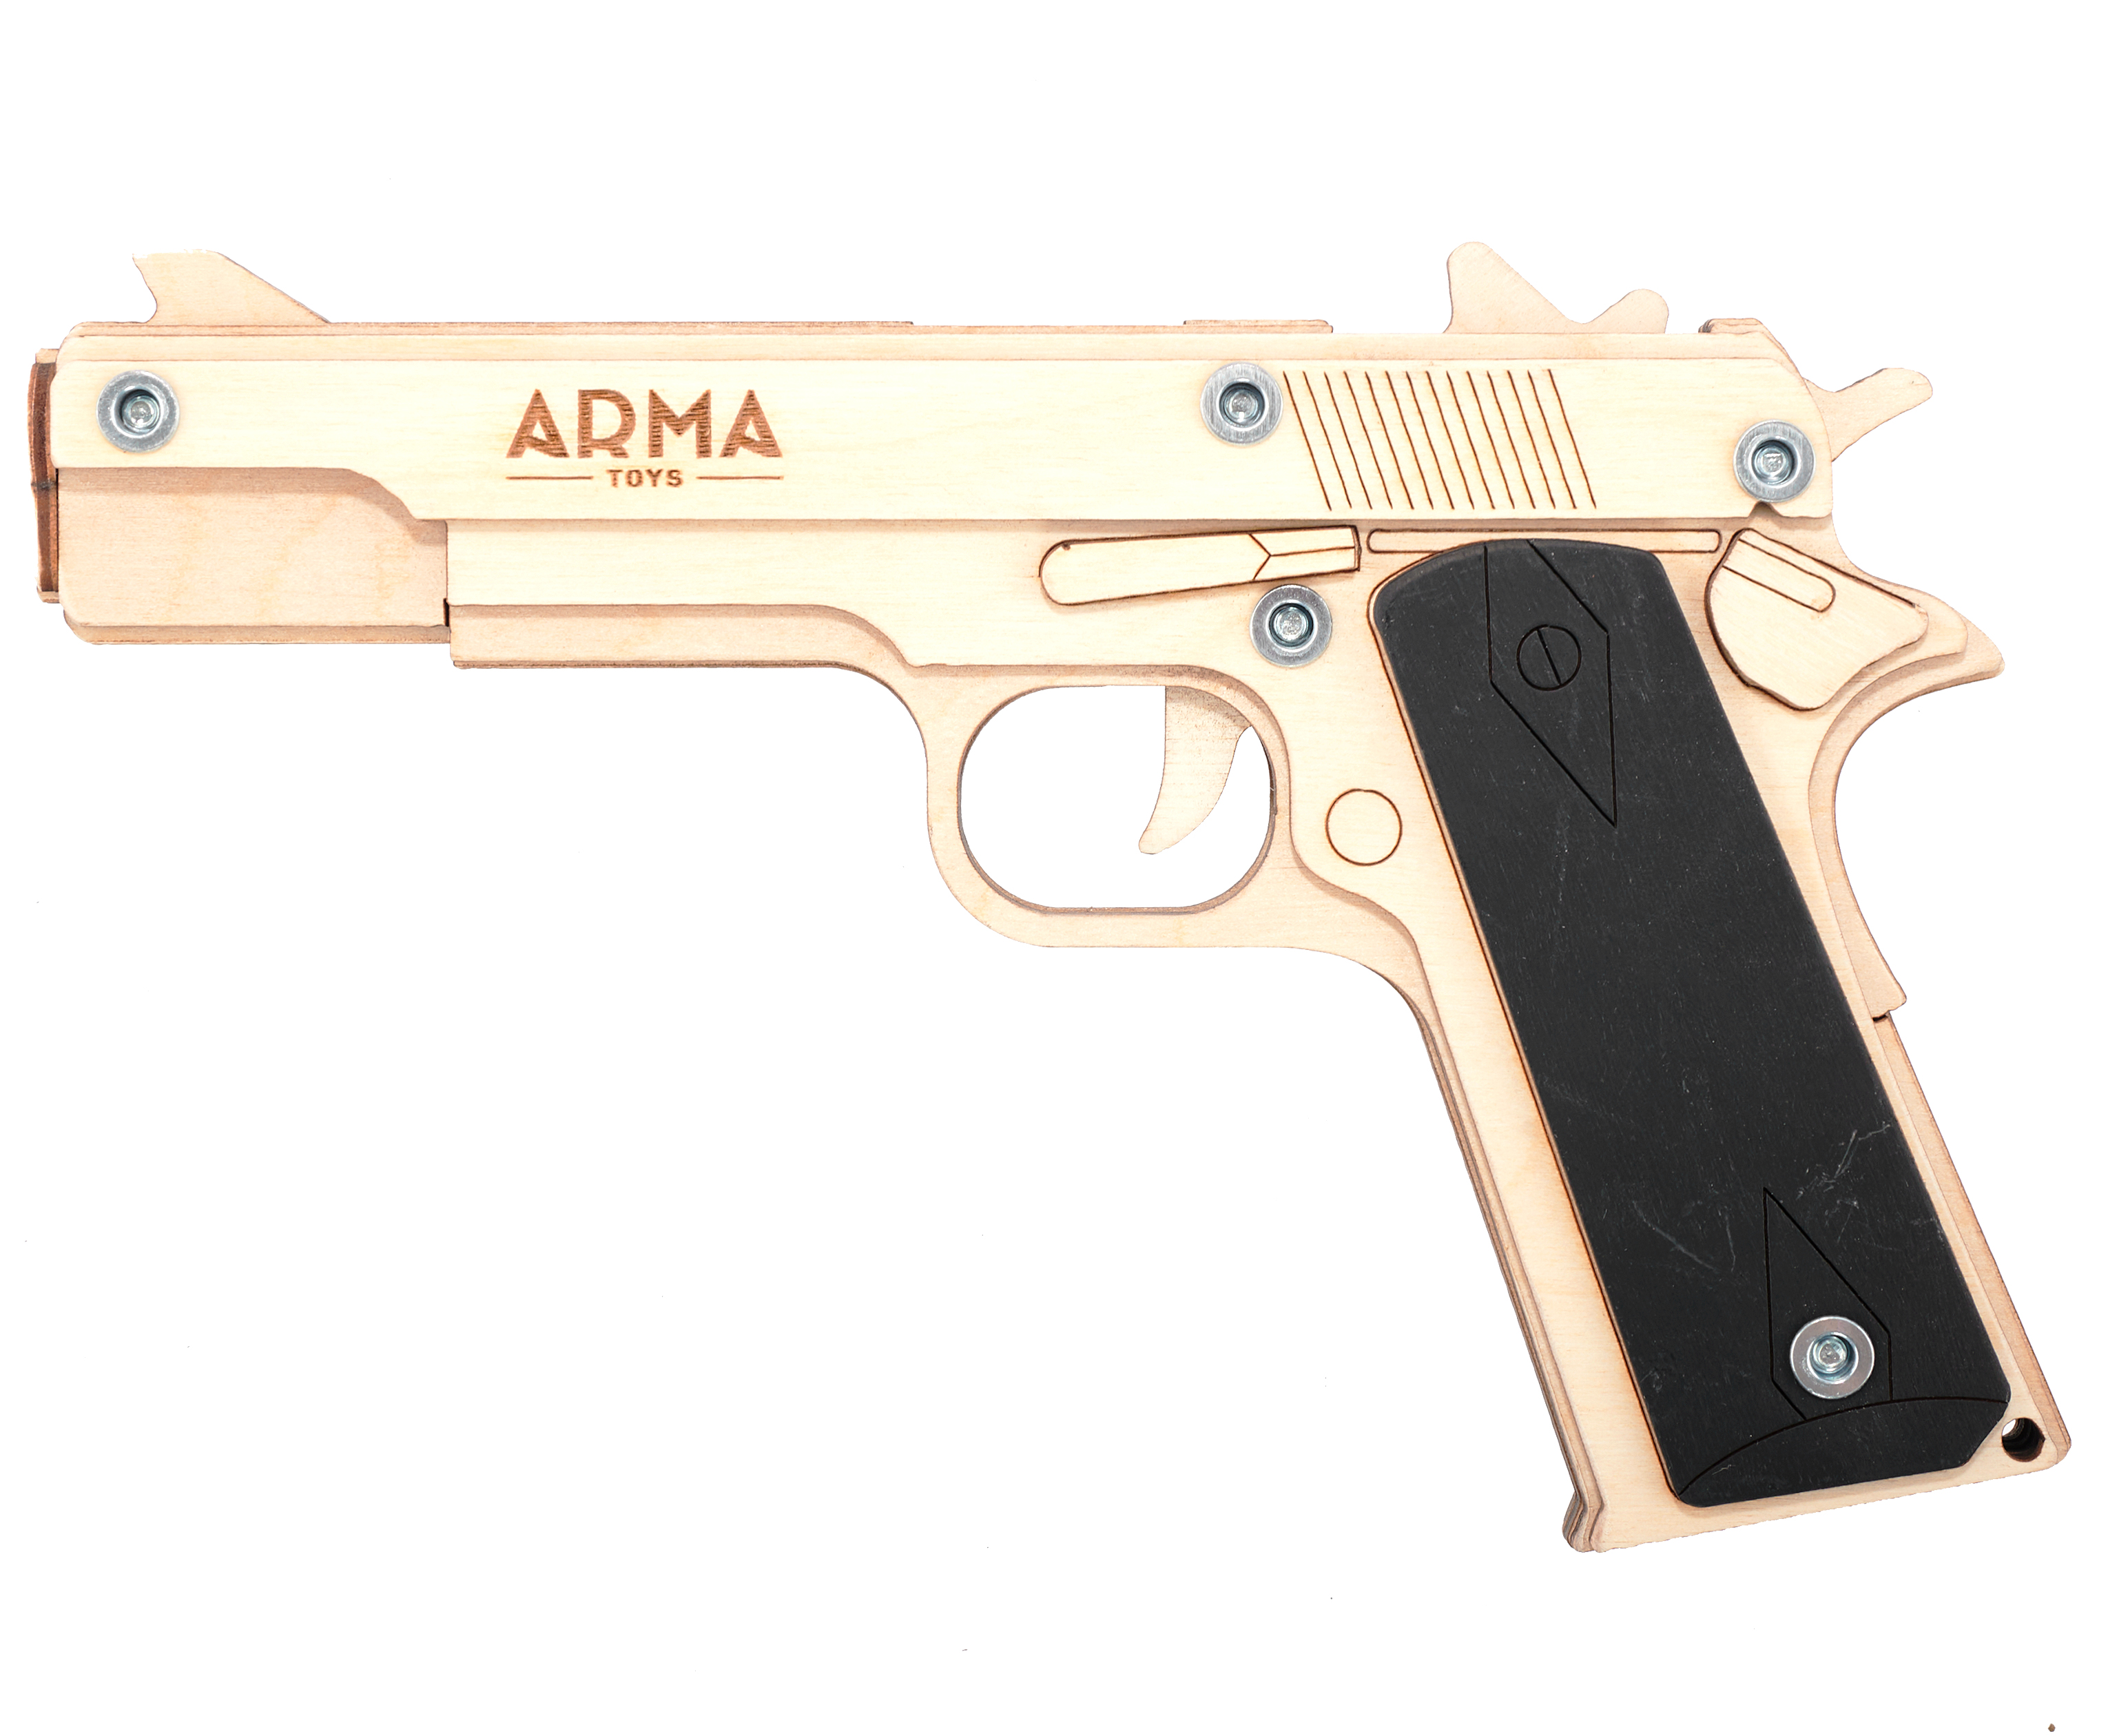 Резинкострел игрушечный Arma toys пистолет Кольт макет, Colt 1911, AT022